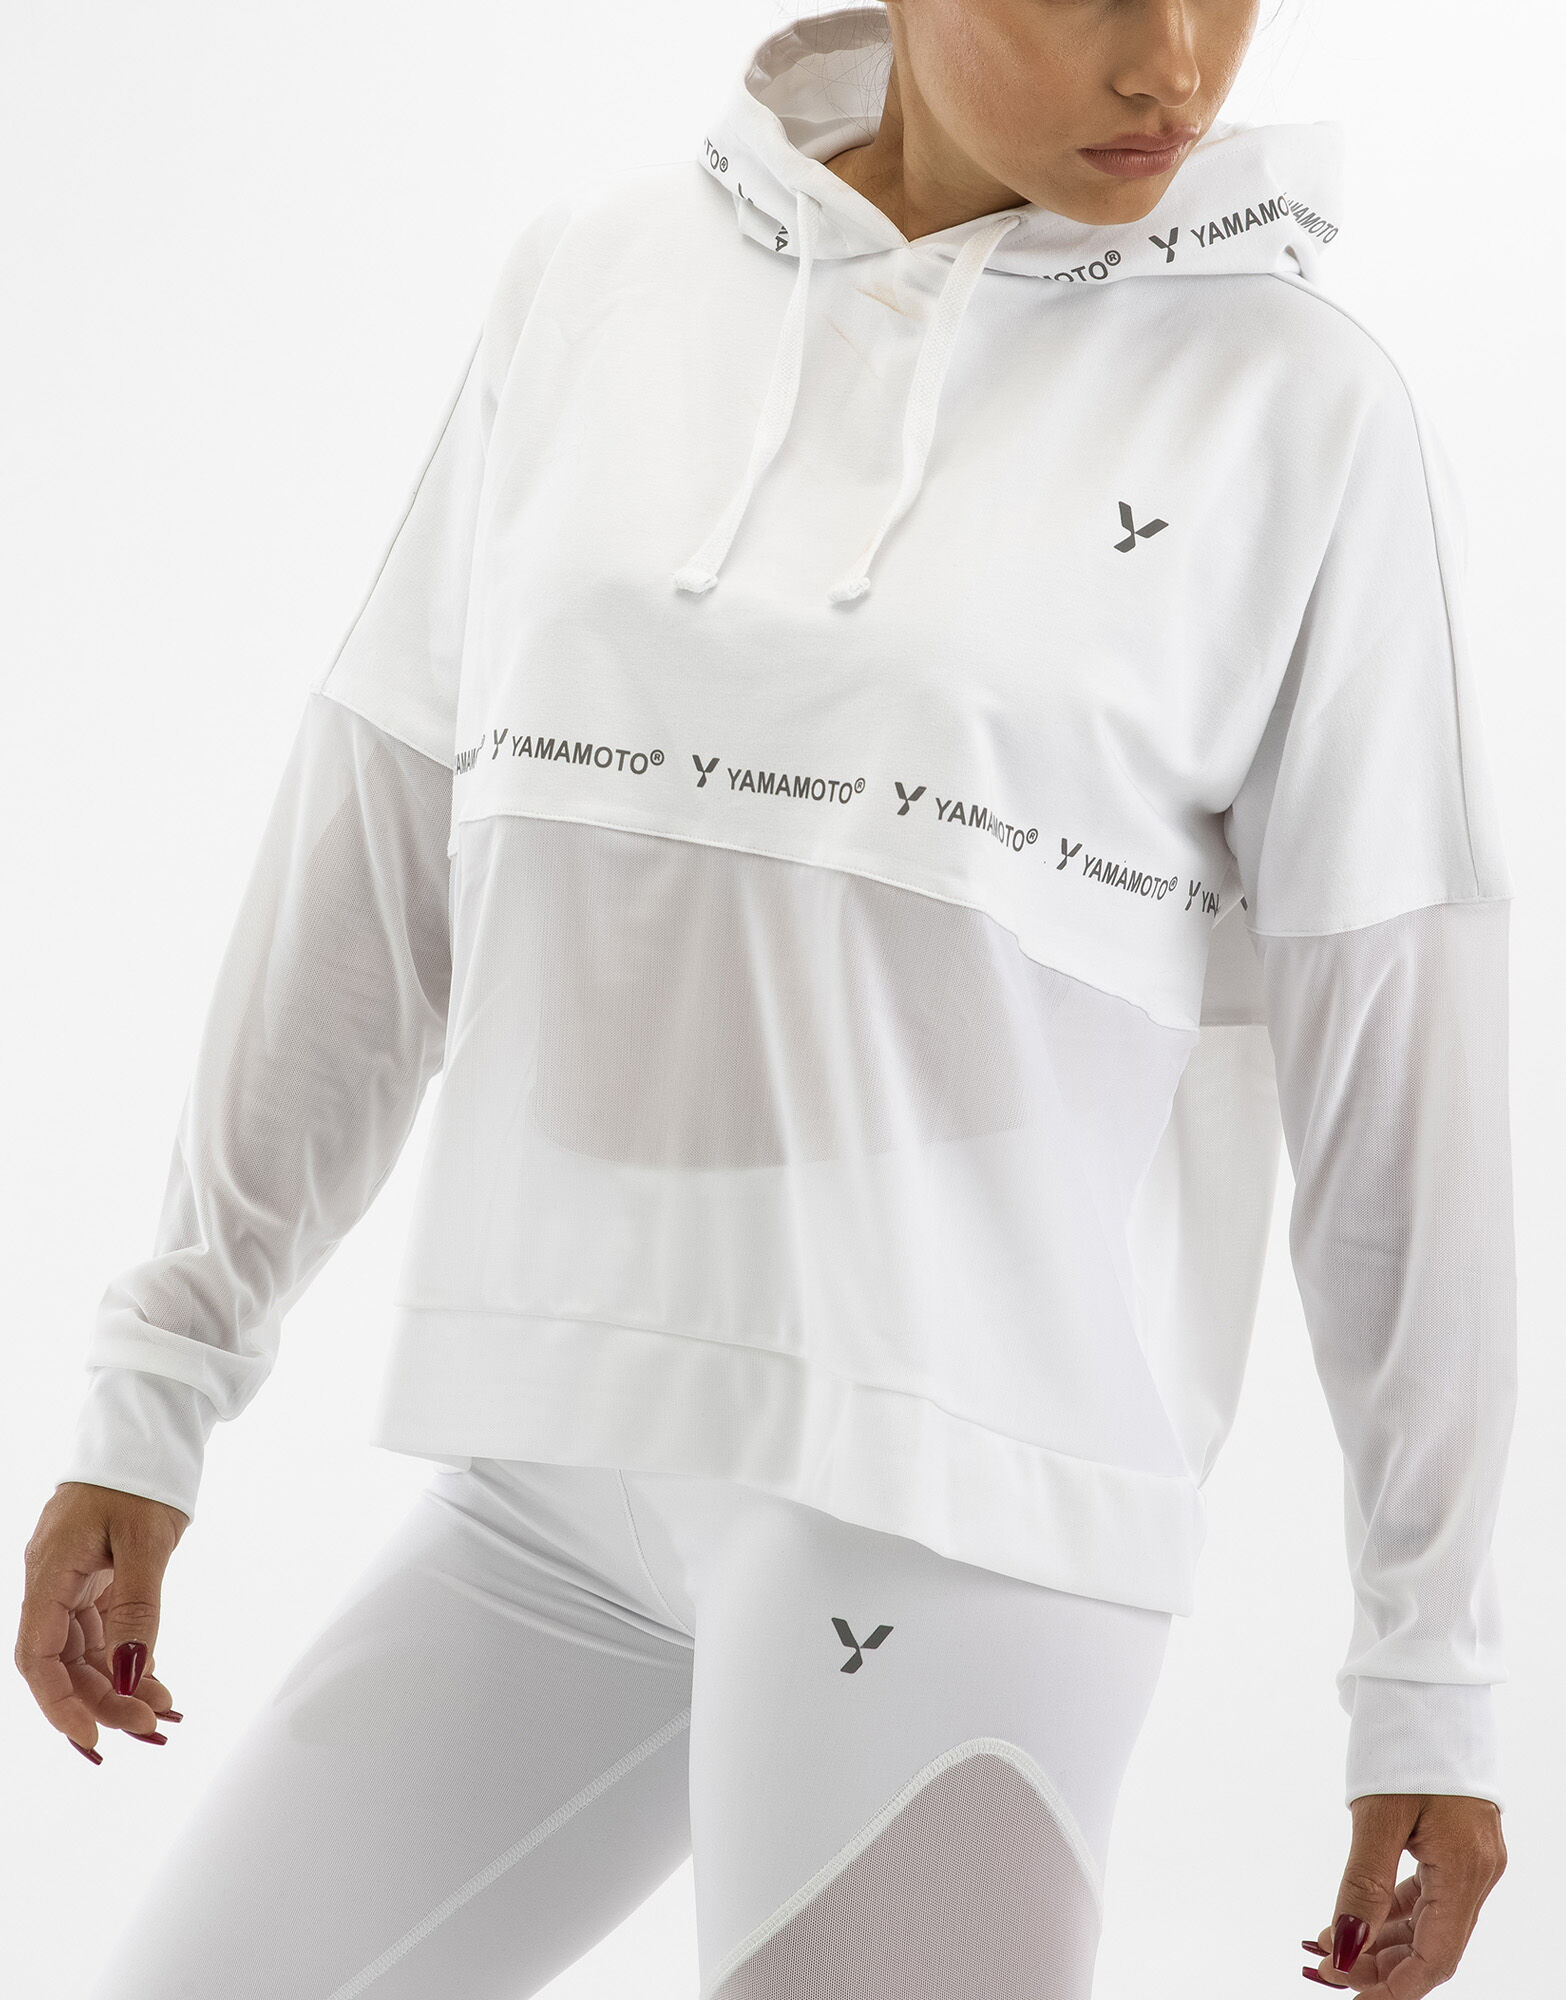 YAMAMOTO OUTFIT Lady Sweatshirt Colore: Bianco/bianco Xs